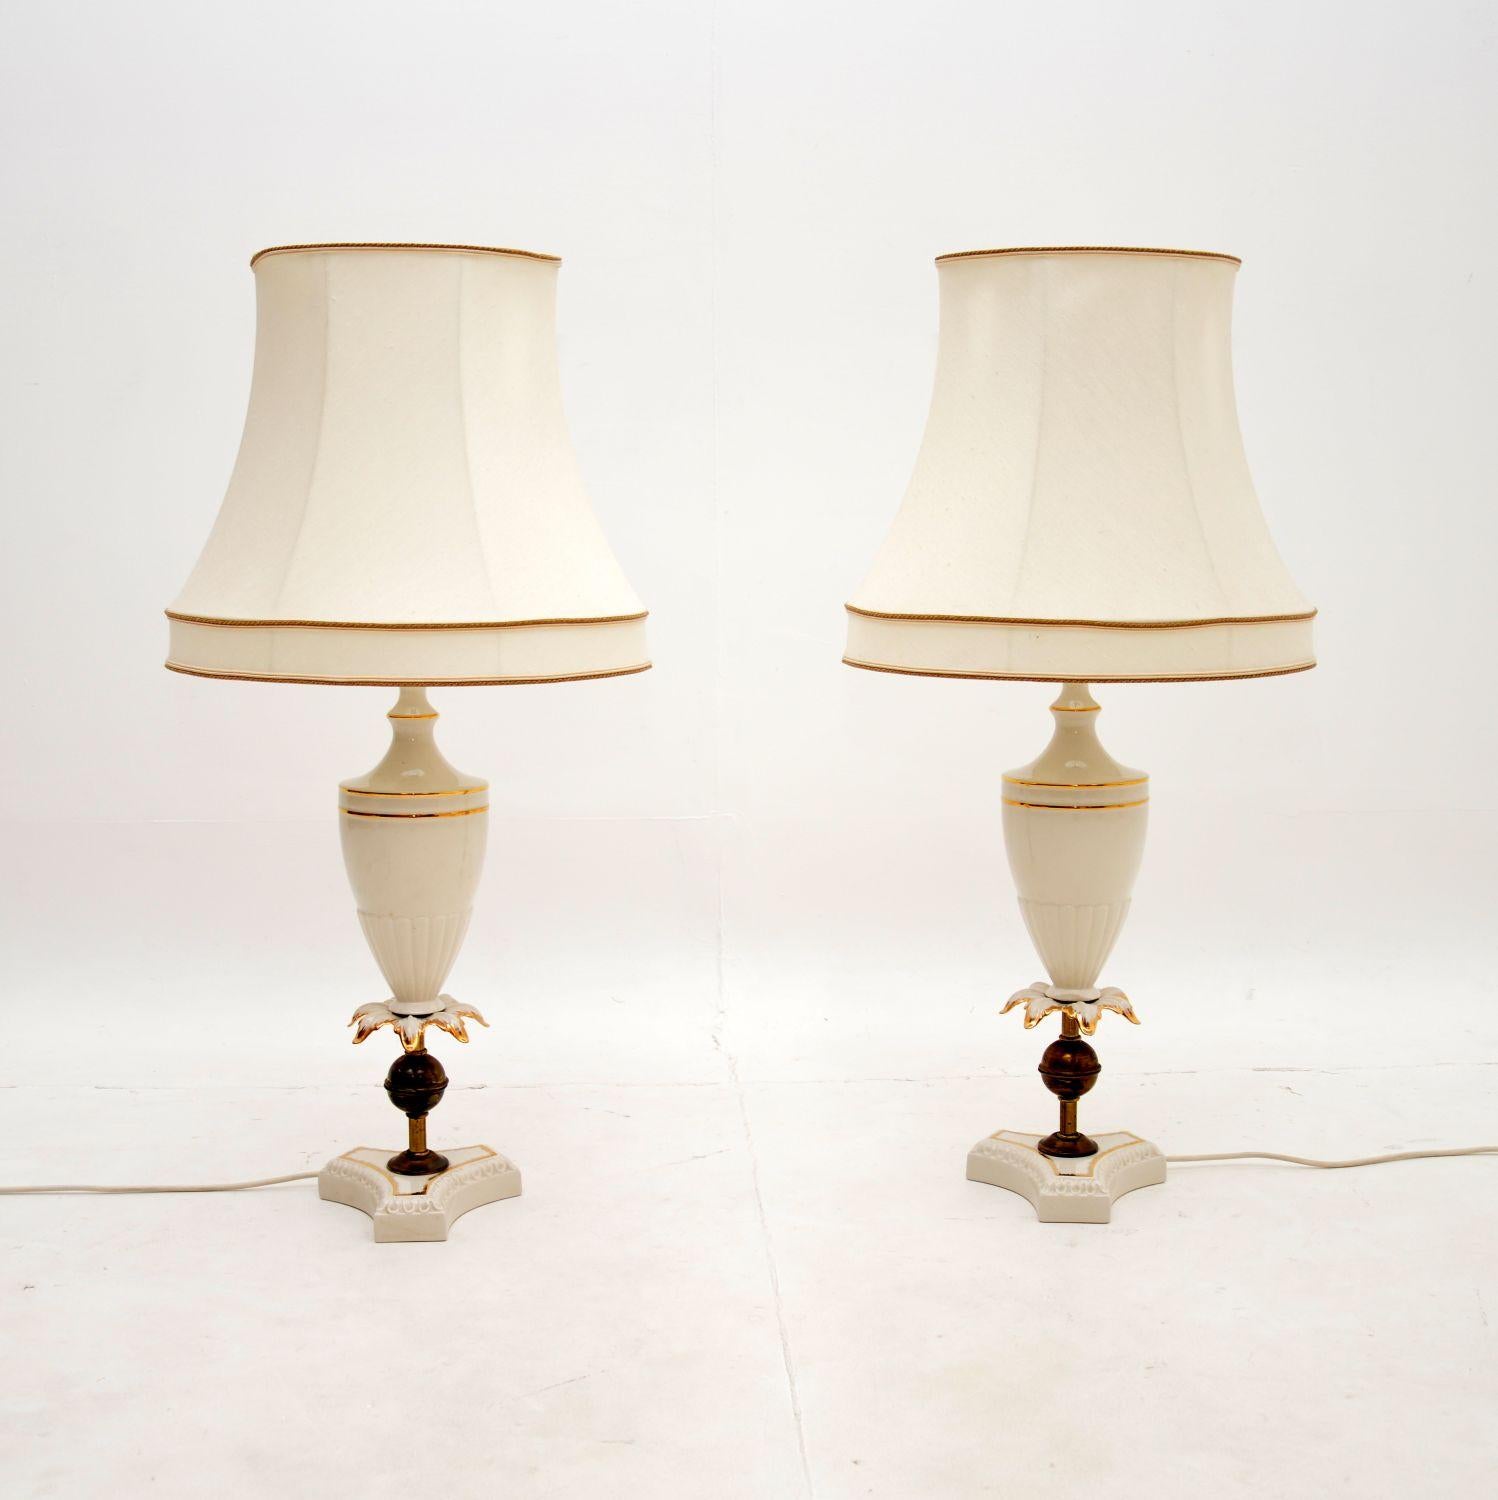 Une belle paire de lampes de table anciennes en céramique italienne. Ils ont été fabriqués en Italie et datent des années 1950-60.

La qualité est fantastique, ils sont magnifiquement faits avec un design magnifique. Les supports en céramique